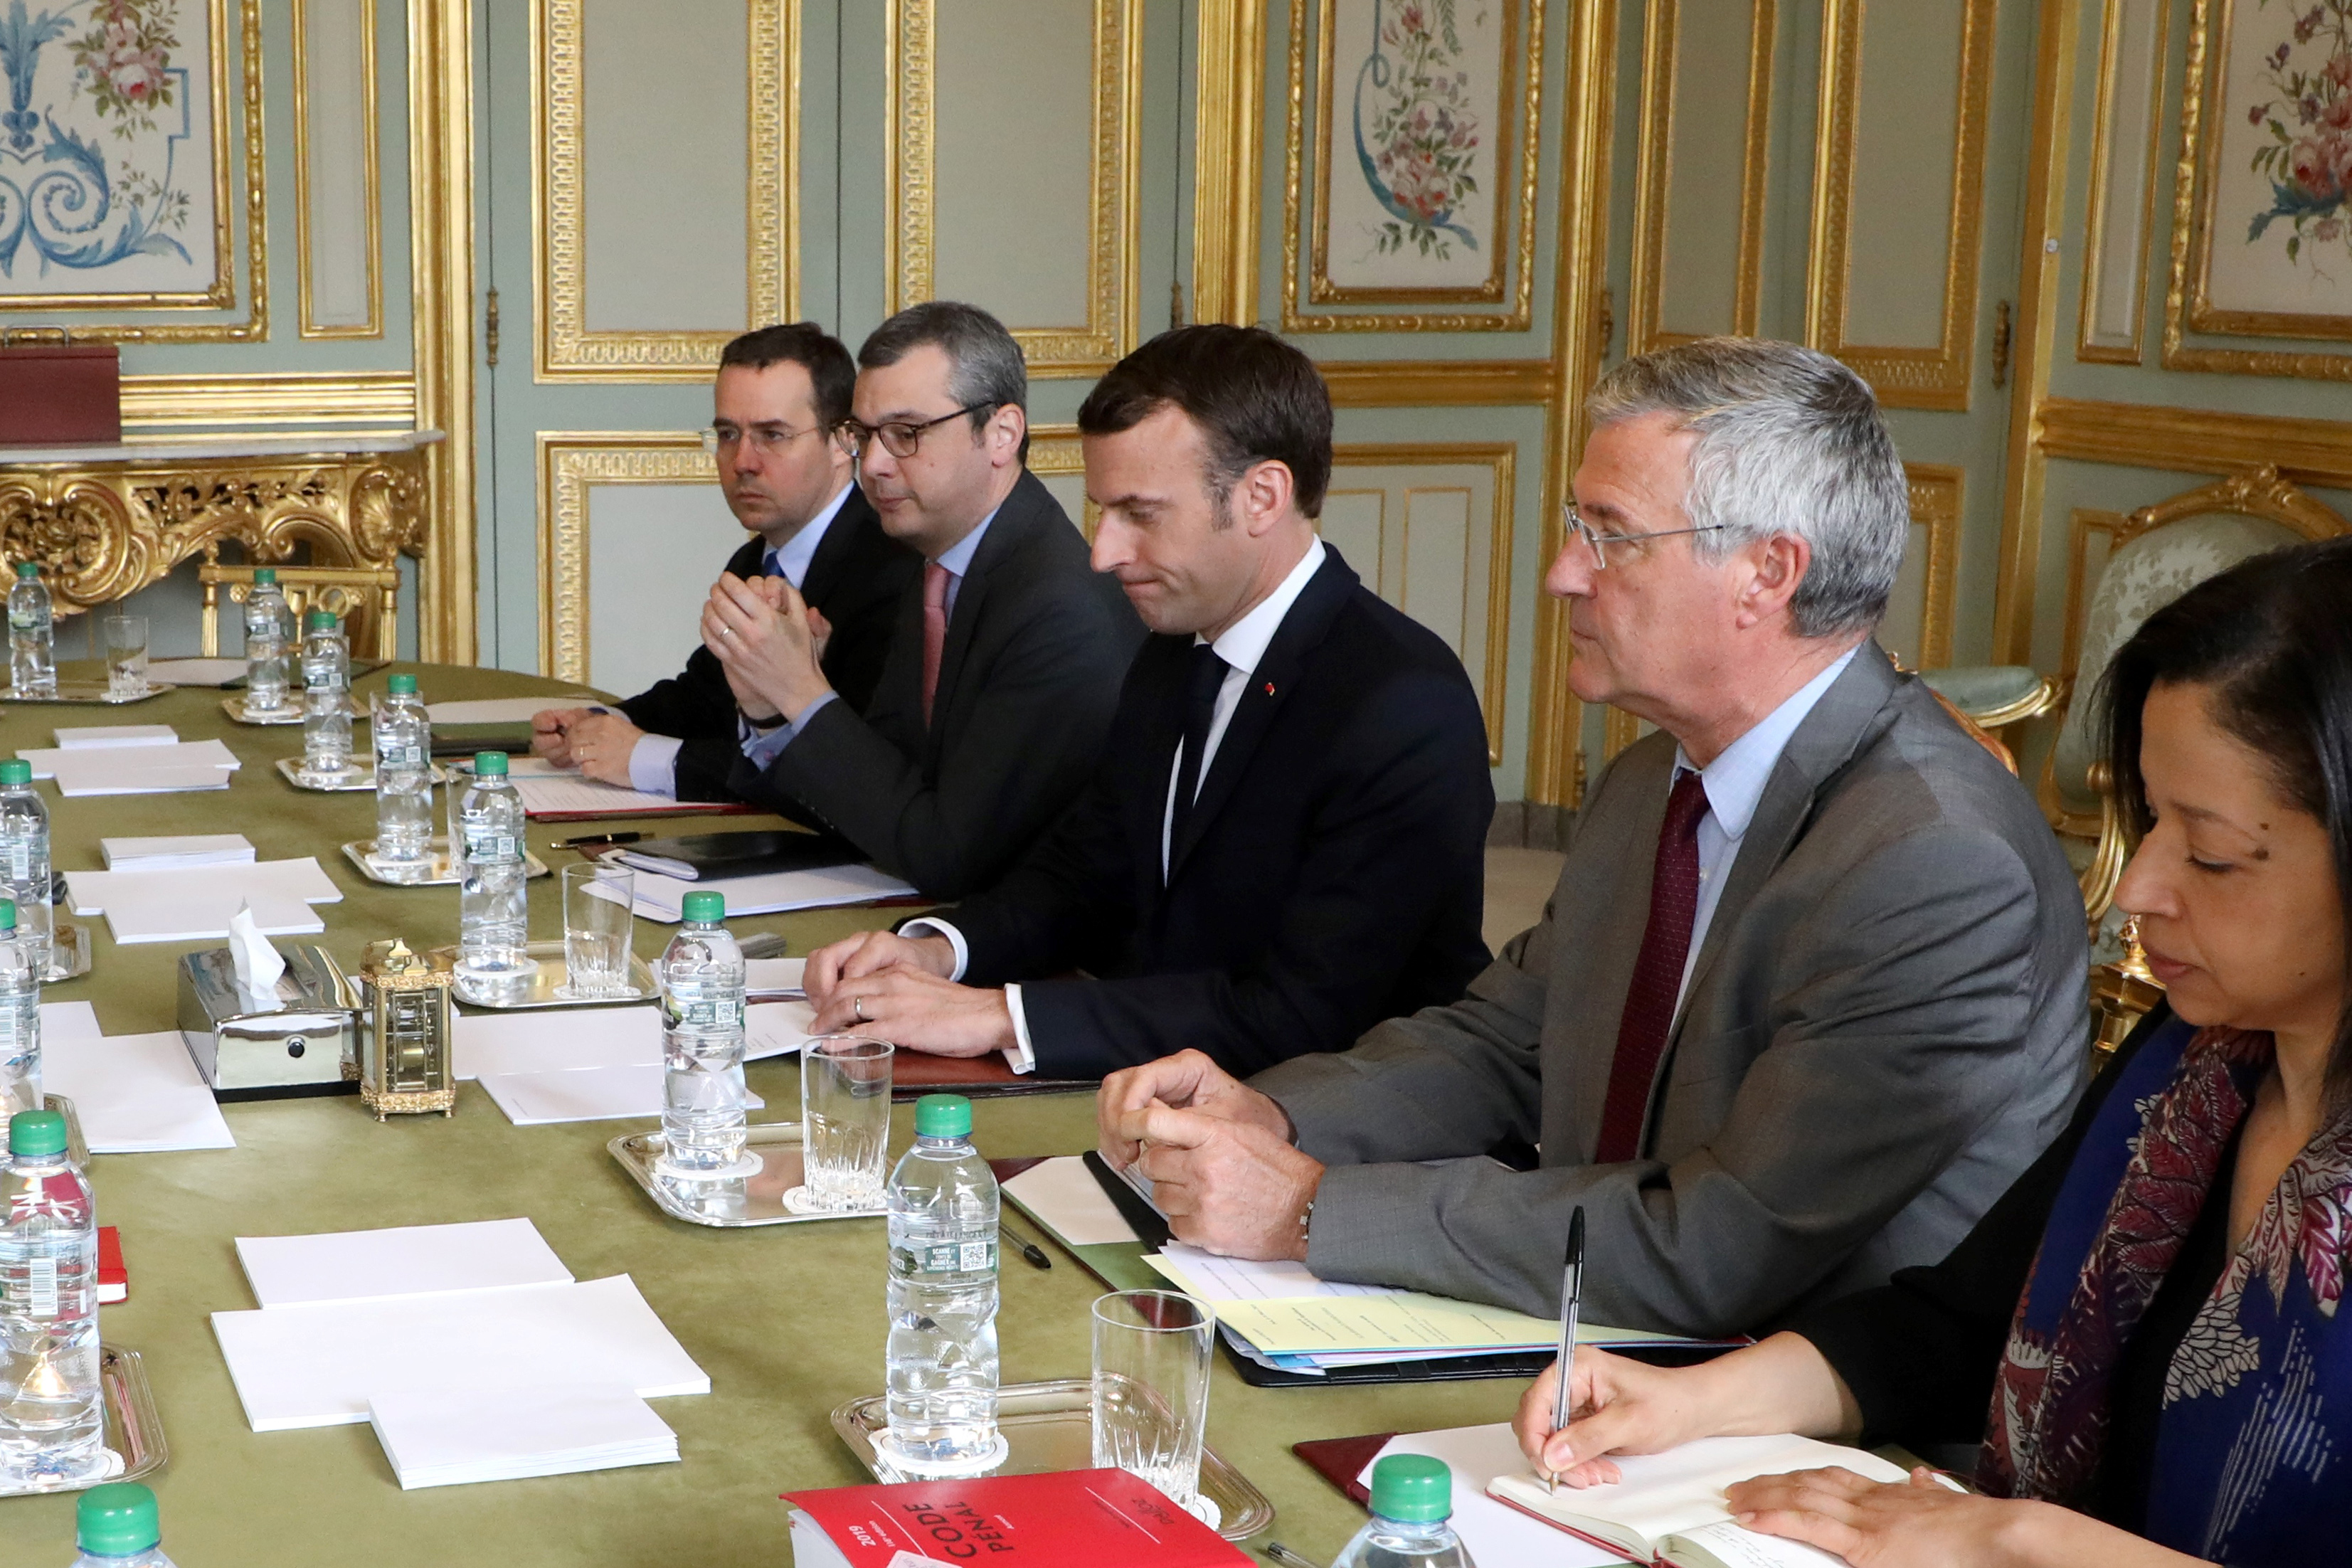 Emmanuel Macron leads meeting